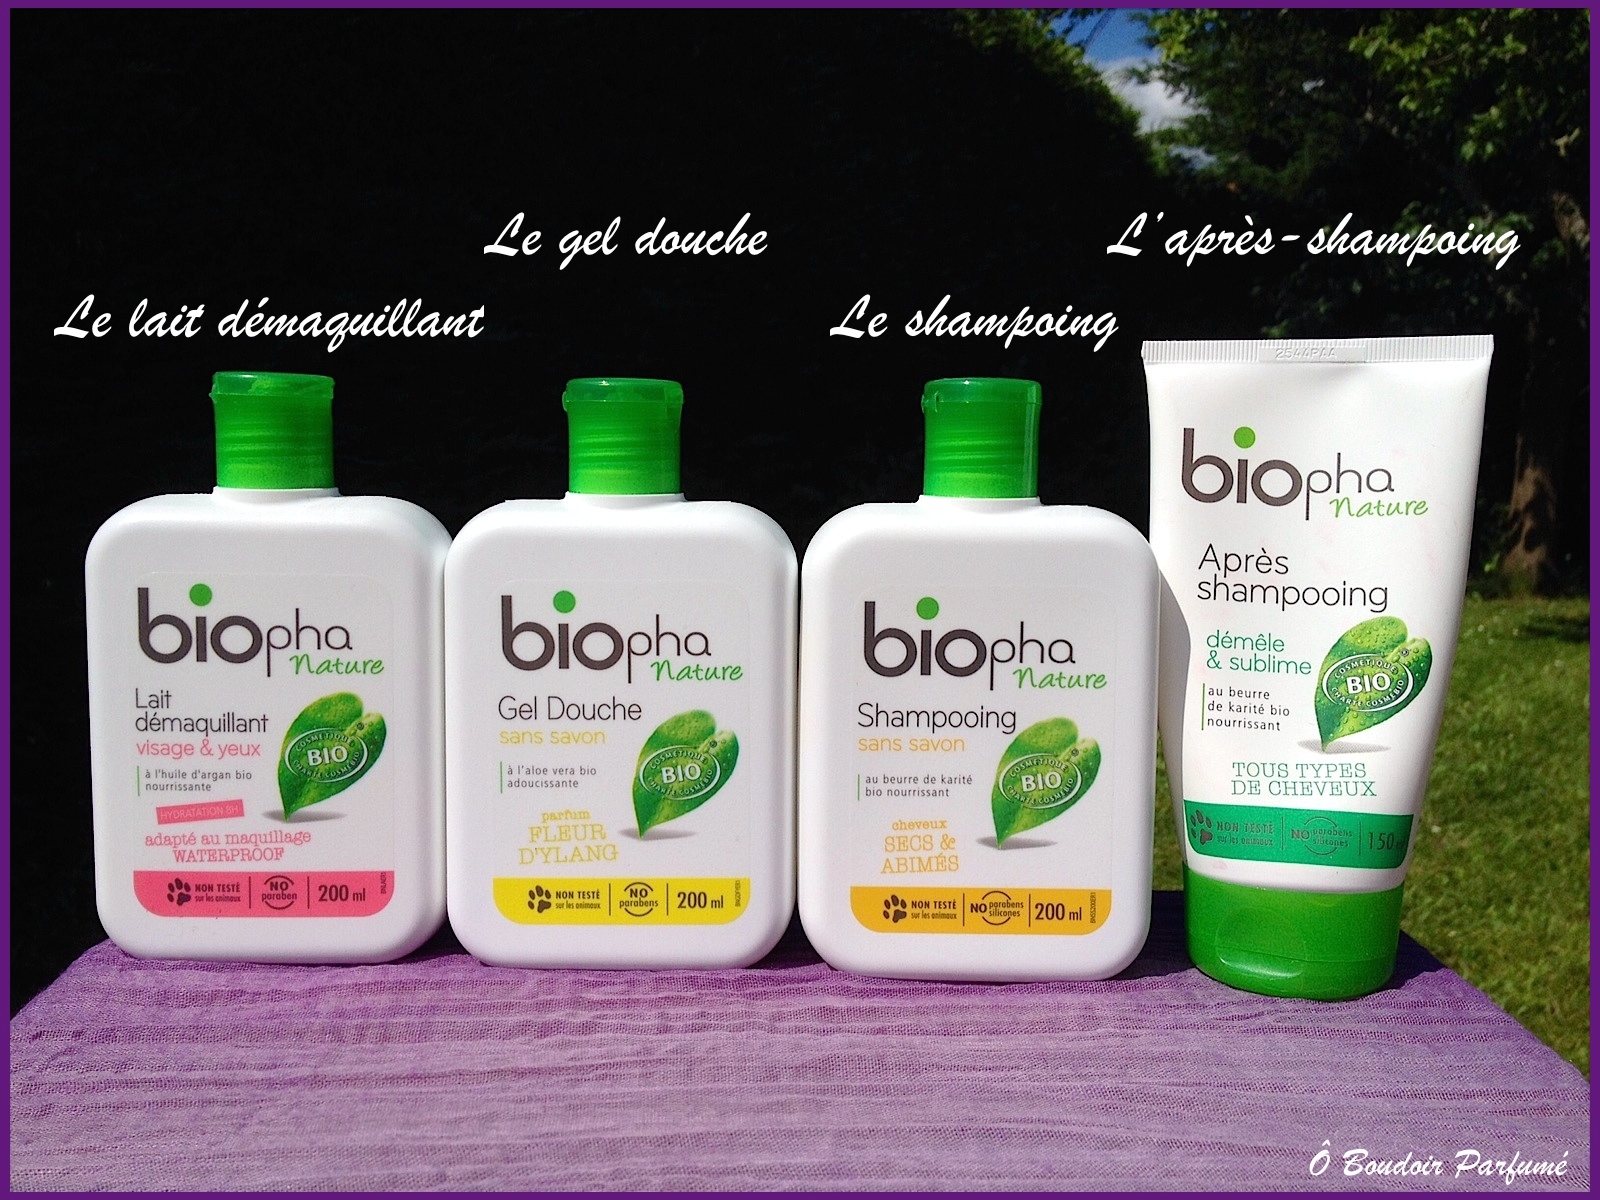 Biopha, la marque bio et naturelle pour les petits budgets